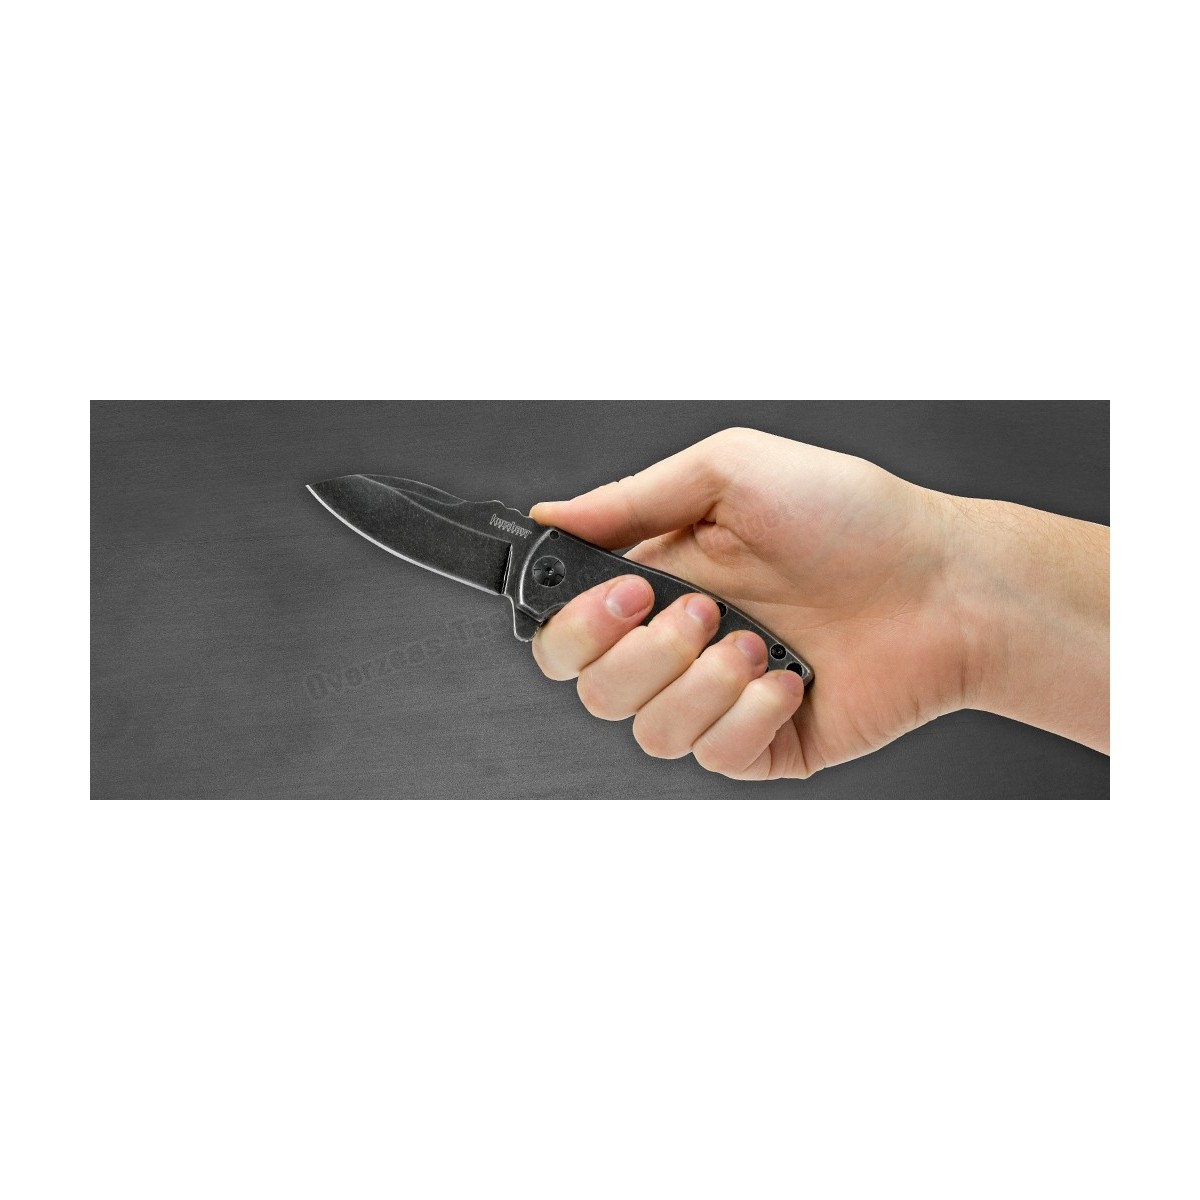 มีดพับ Kershaw Spline Assisted Opening Flipper Knife (2.8" Blackwash) 3450BW